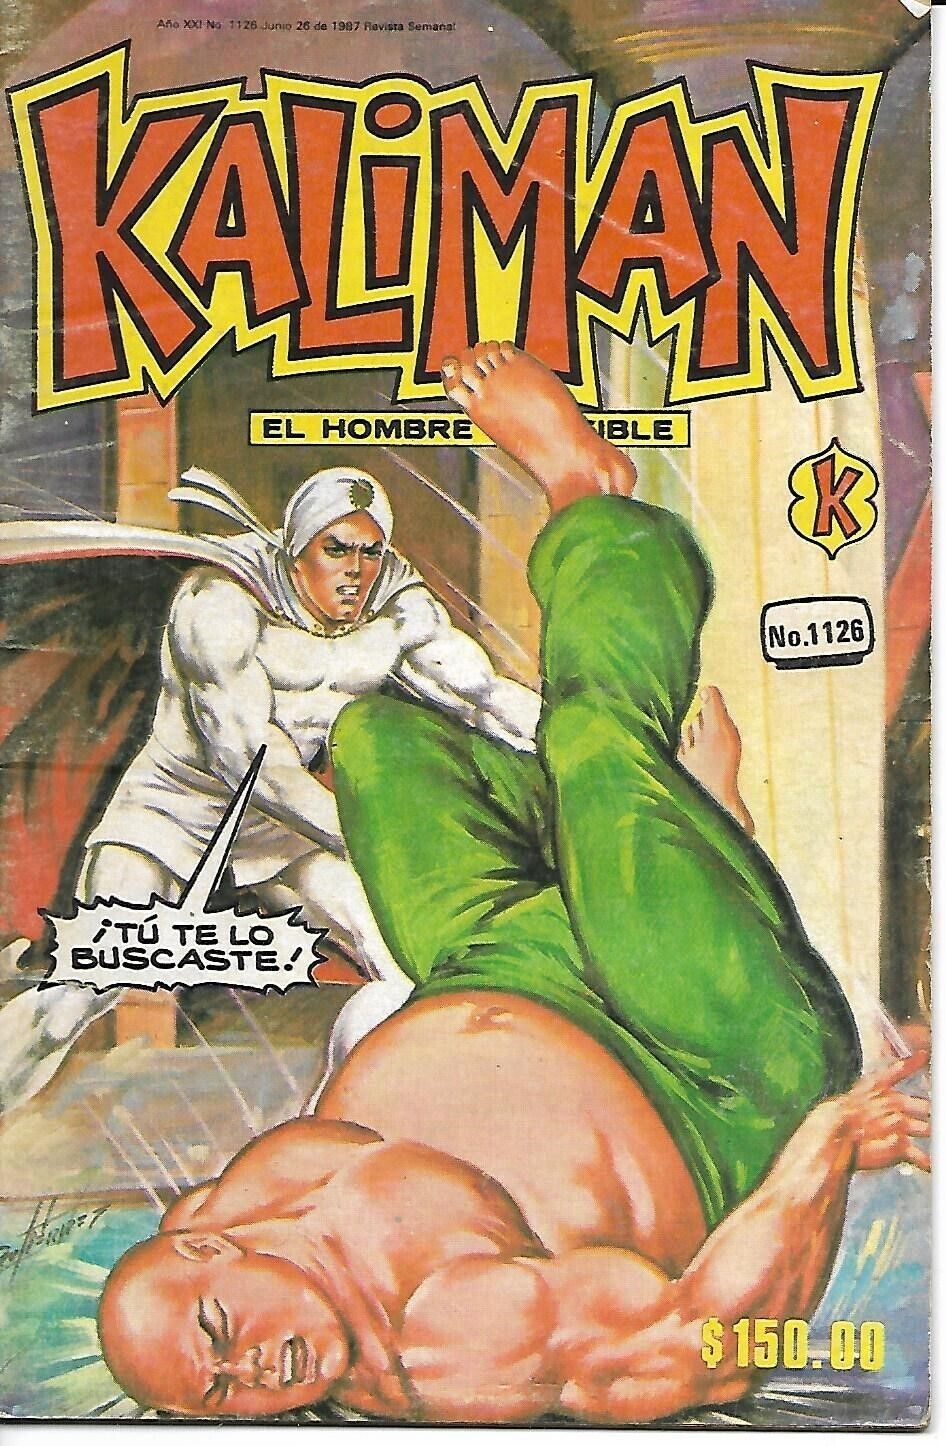 Kaliman El Hombre Increible #1126 - Junio 26, 1987